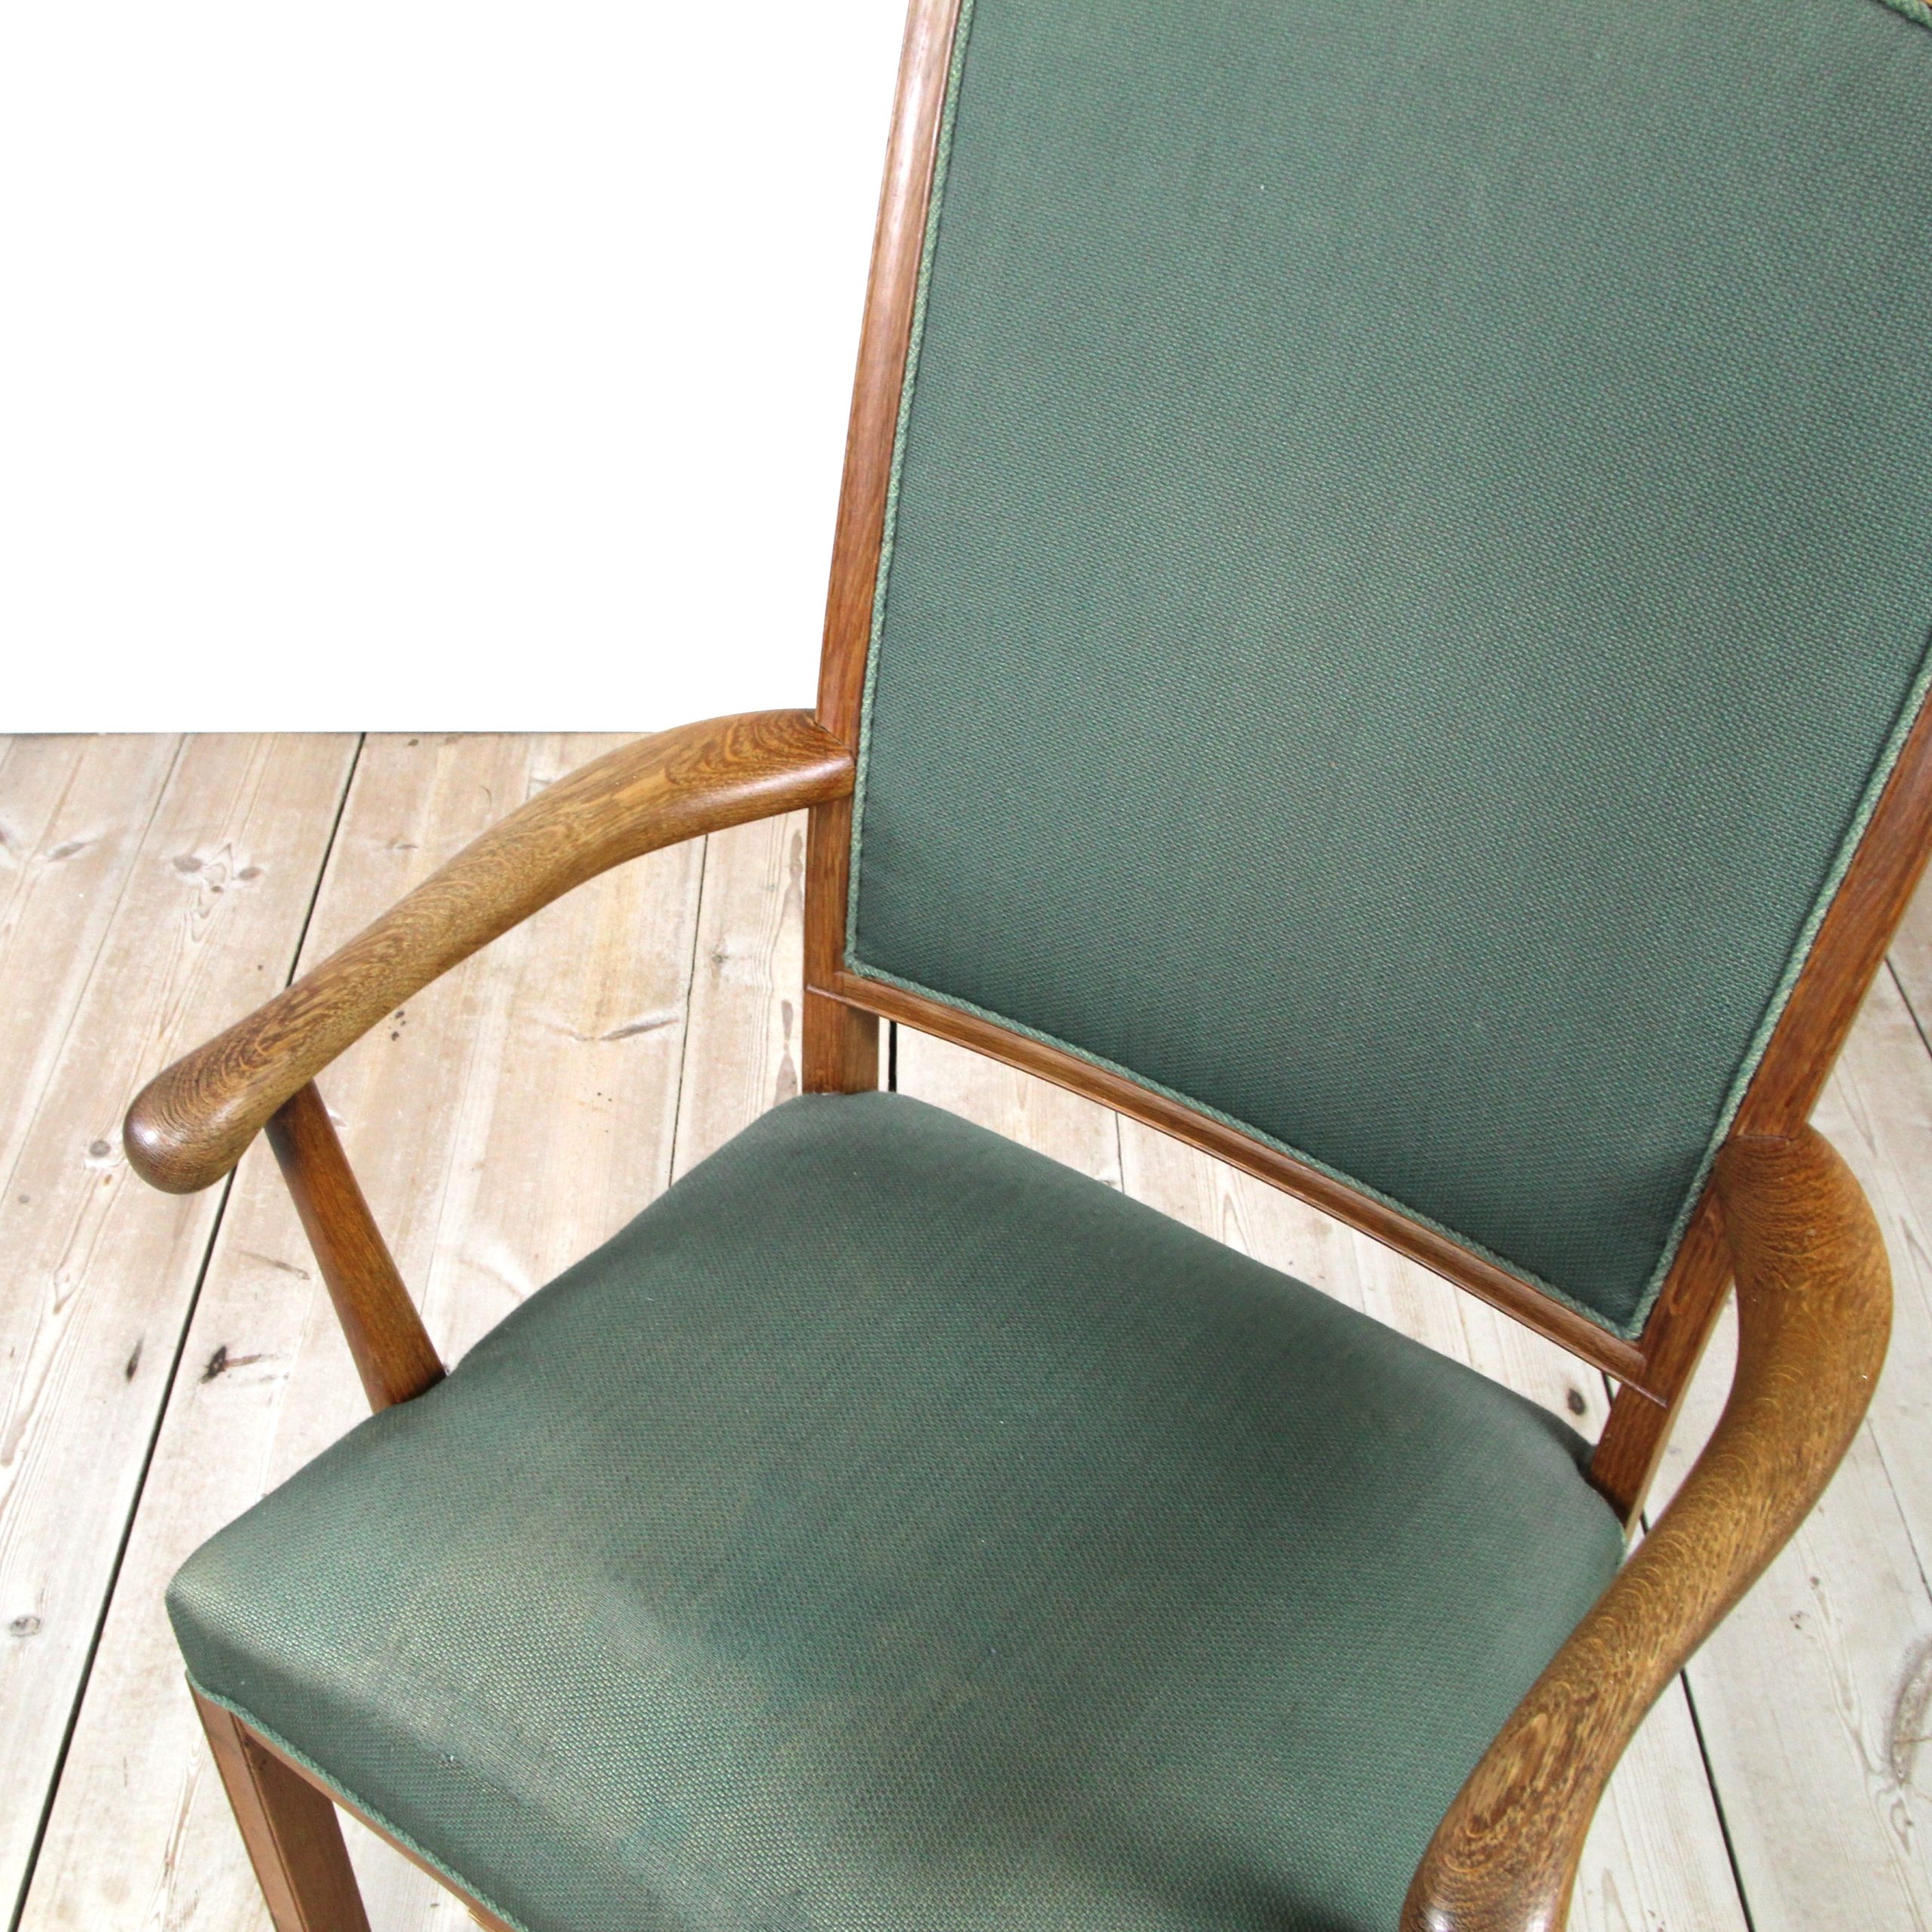 Solid oak armchair, Danish 1940’s/1950’s